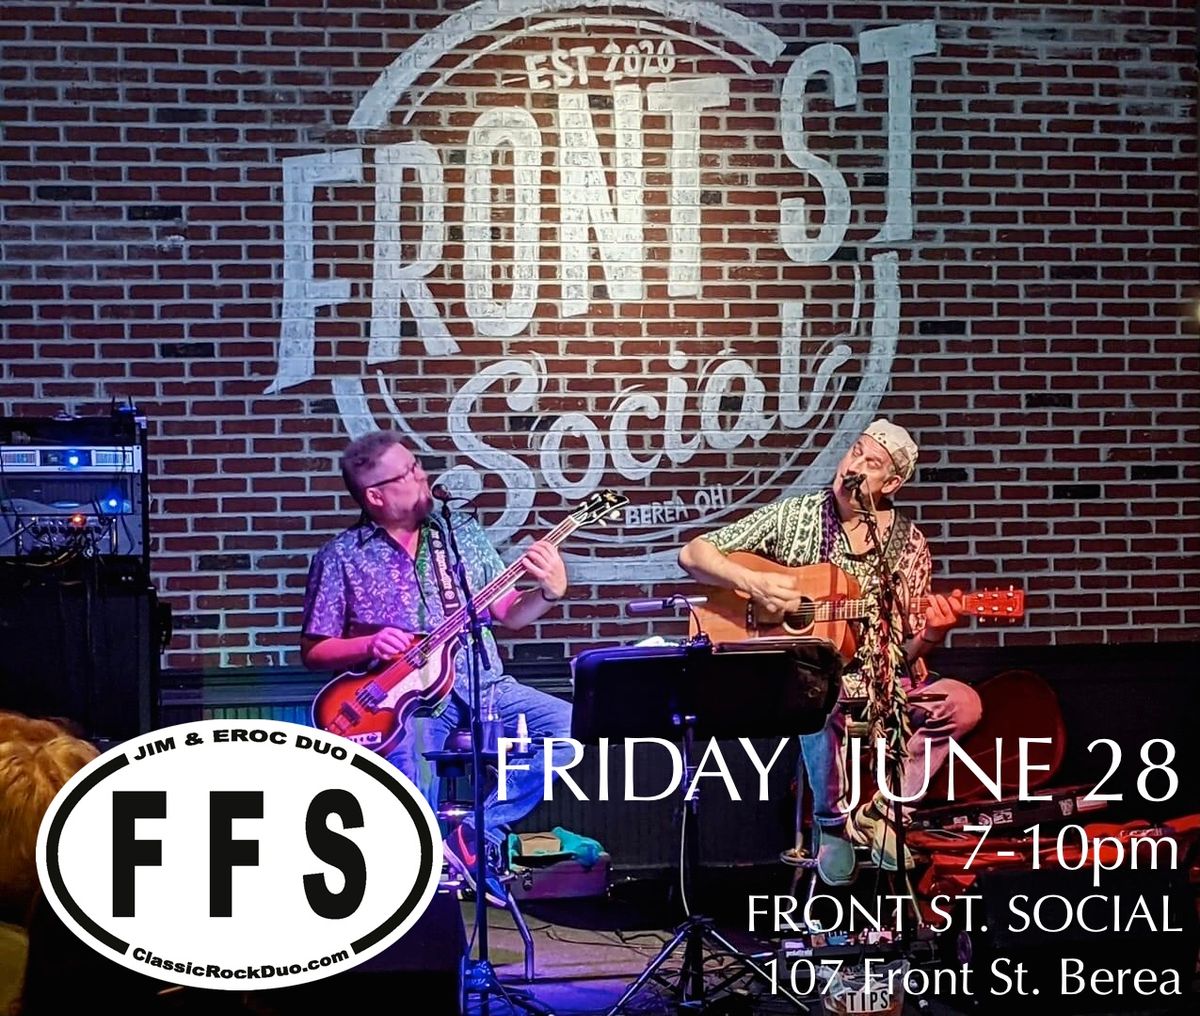 Jim & Eroc Duo at Front St. Social - Friday June 28 \u2022 7-10pm